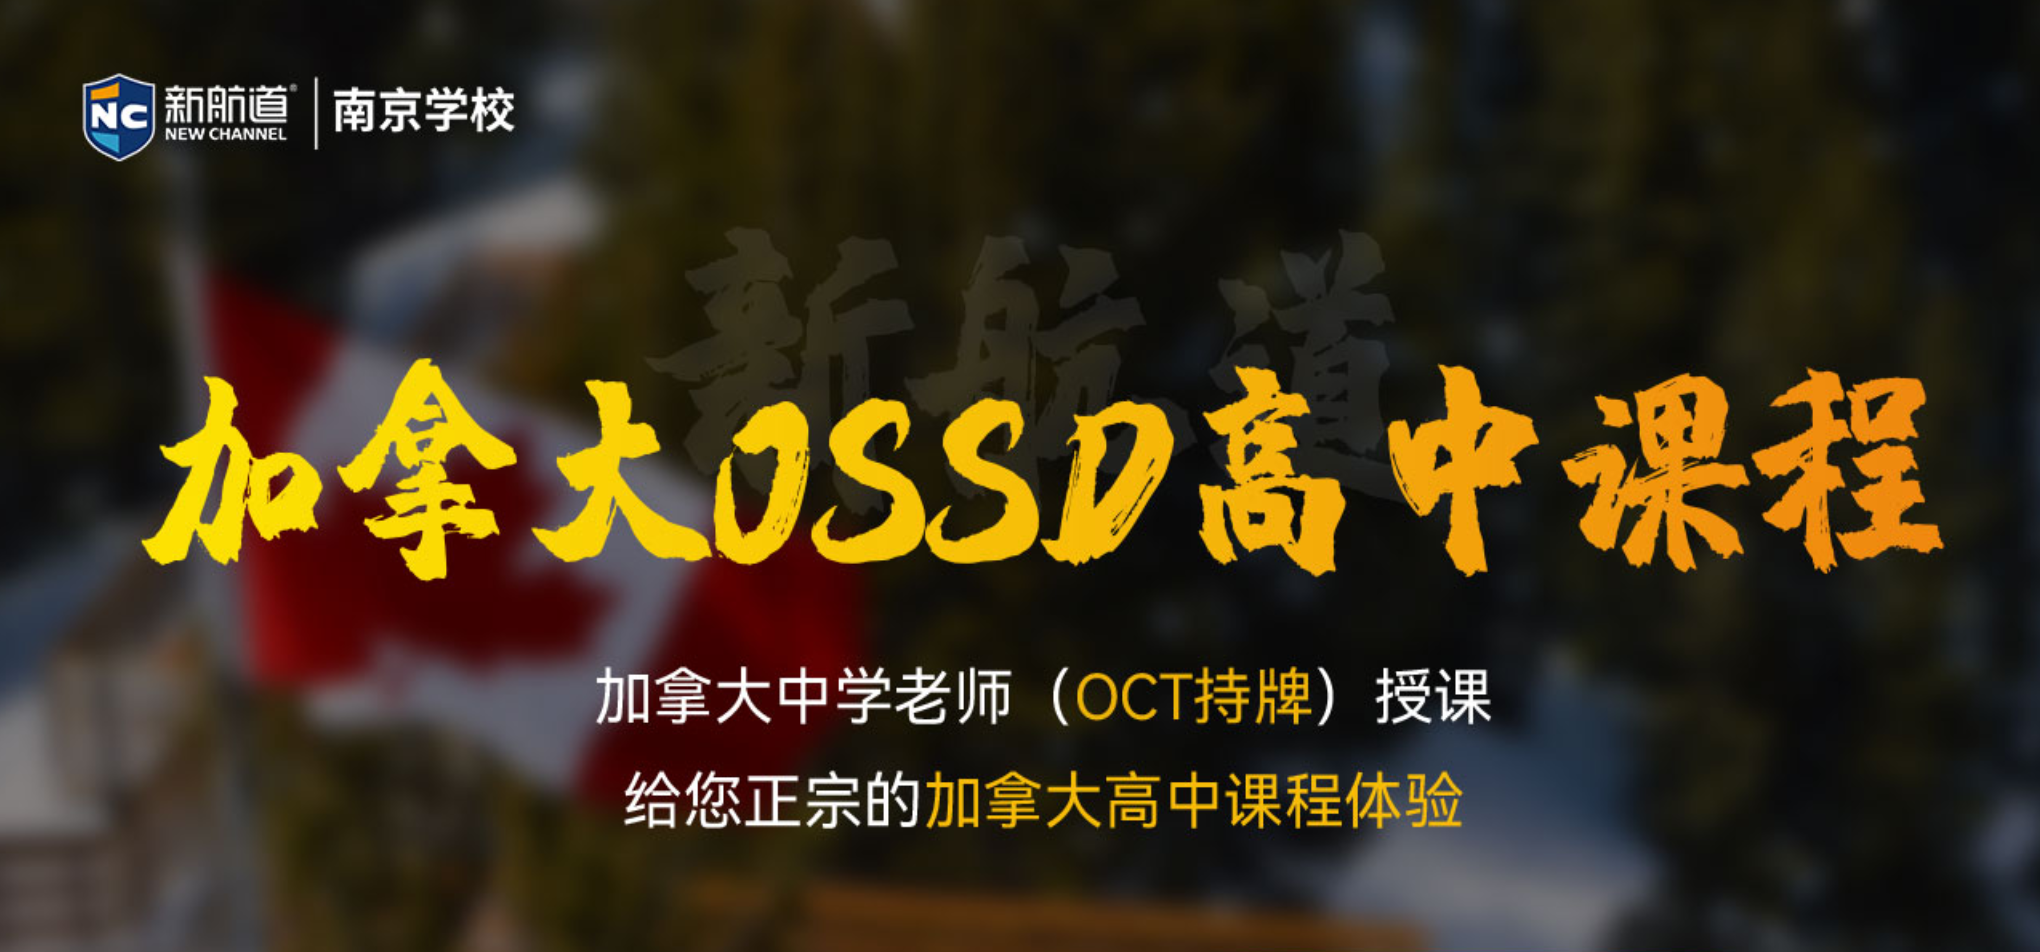 南京新航道OSSD课程,给你不一样的课程体验!